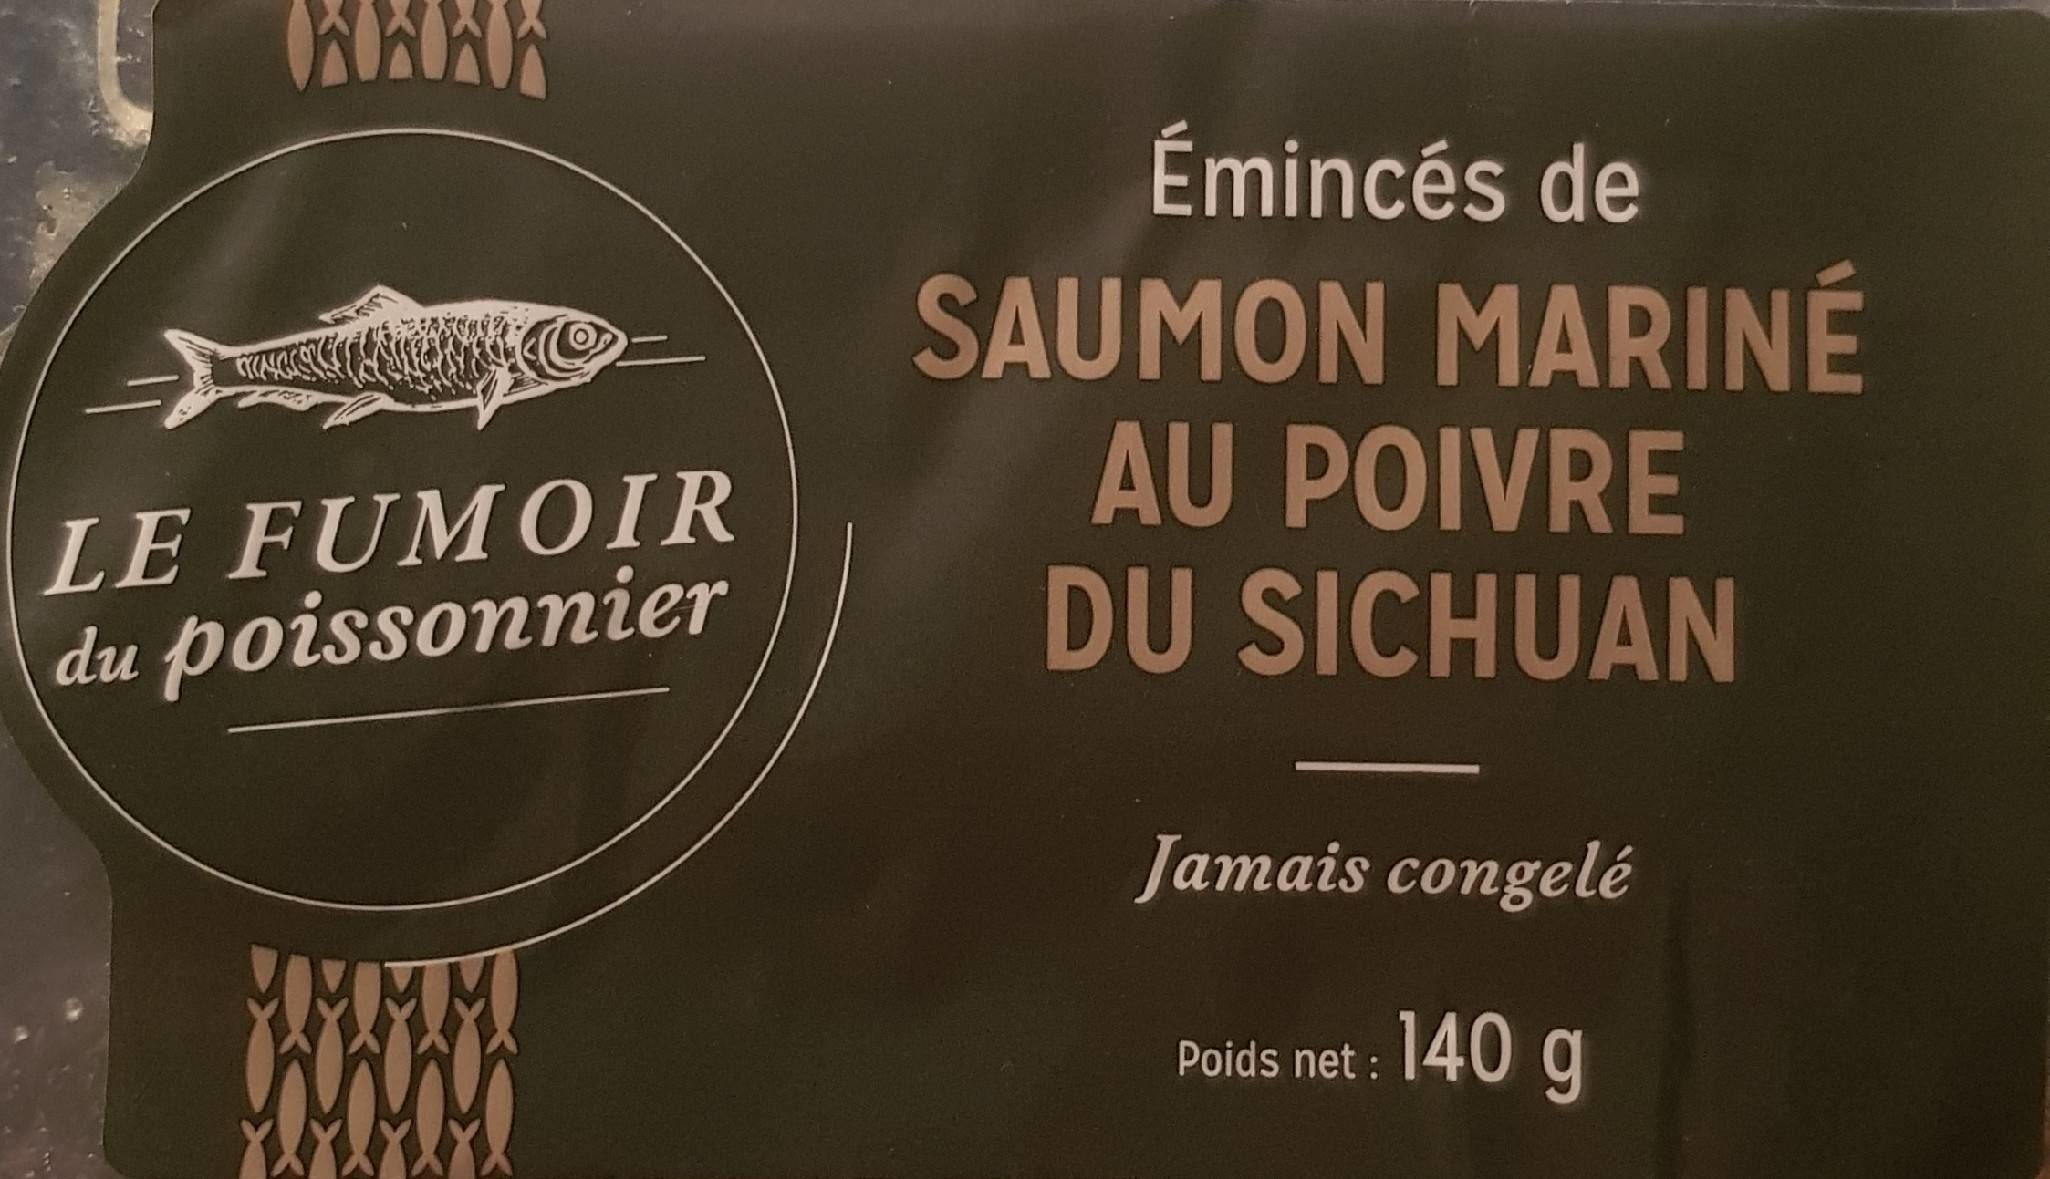 Emincés mariné au poivre du sichuan - Produkt - fr